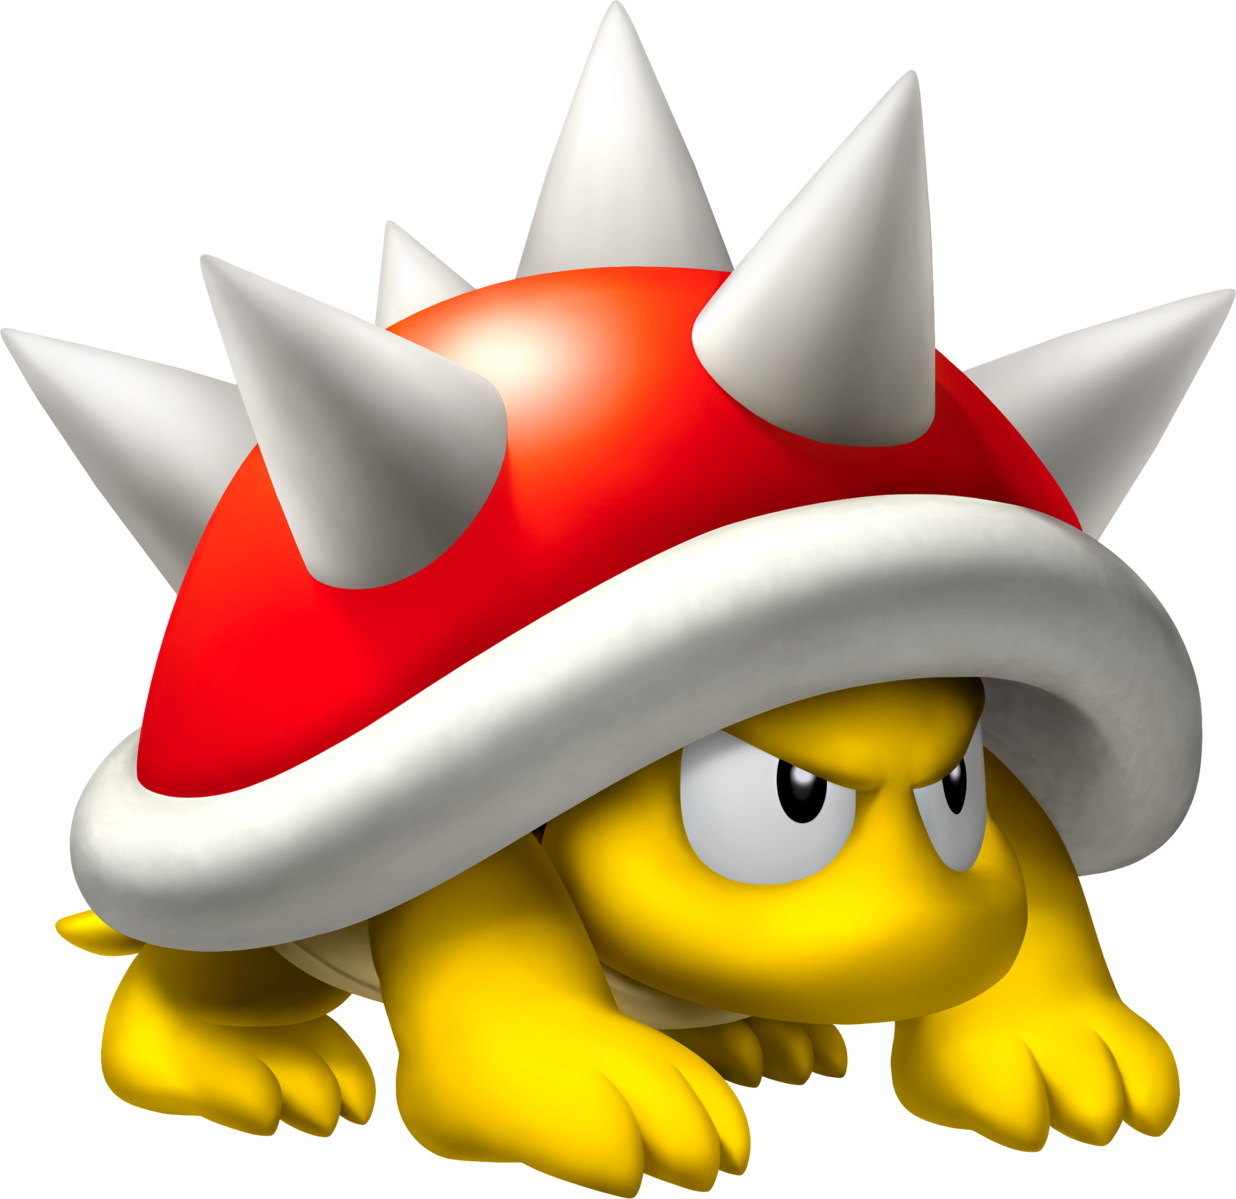 Filespiny Nsmb Artpng Super Mario Wiki The Mario Encyclopedia 5479